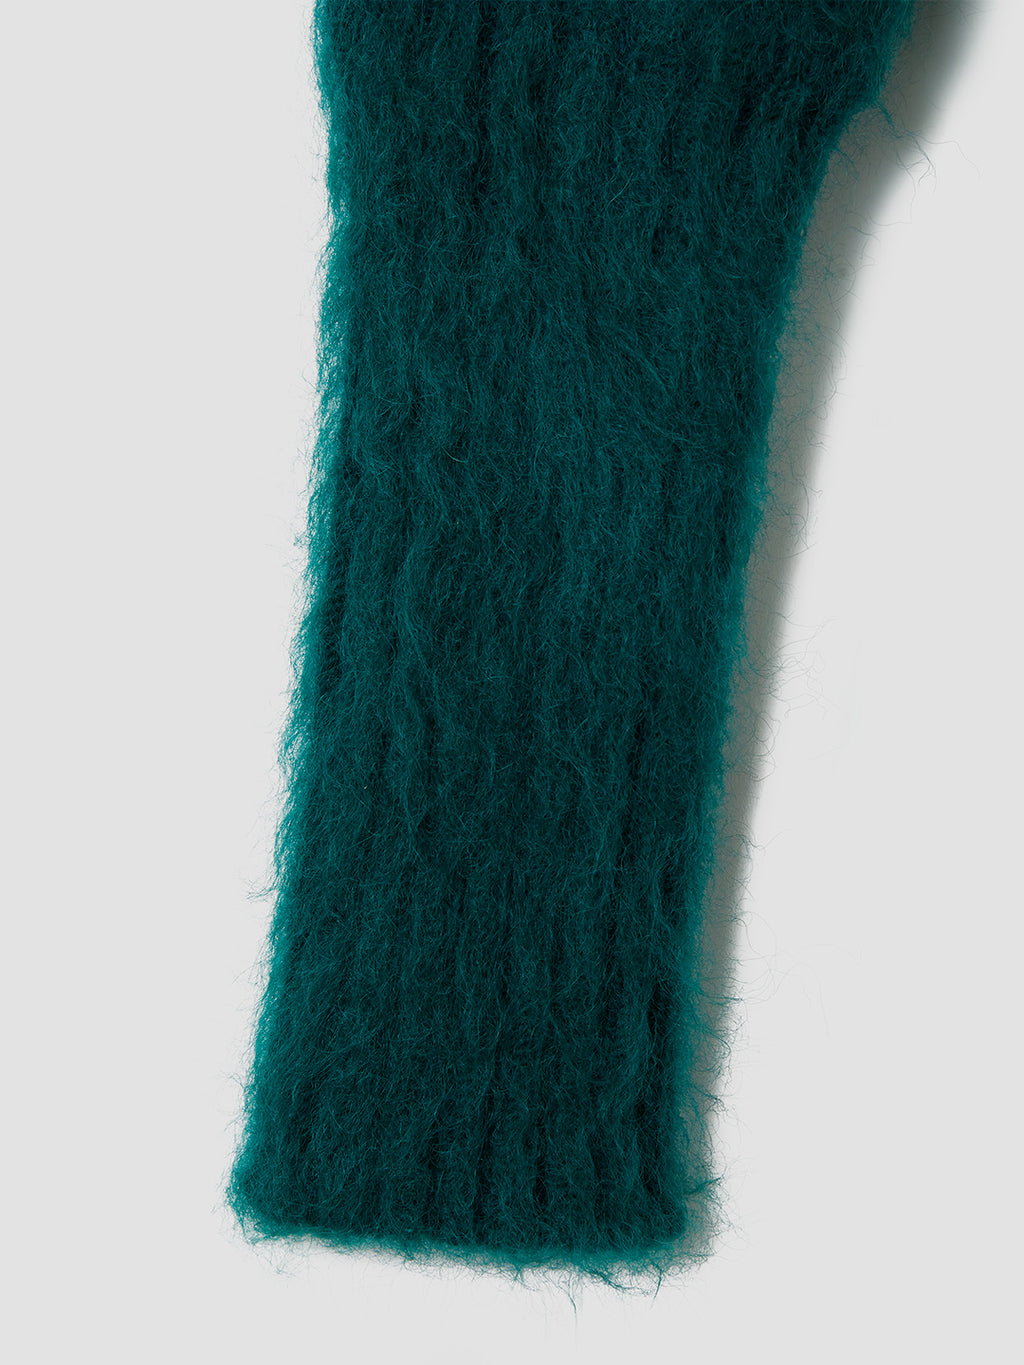 teloplan Atitaya Colour Gradient Knit44000円が定価となってます